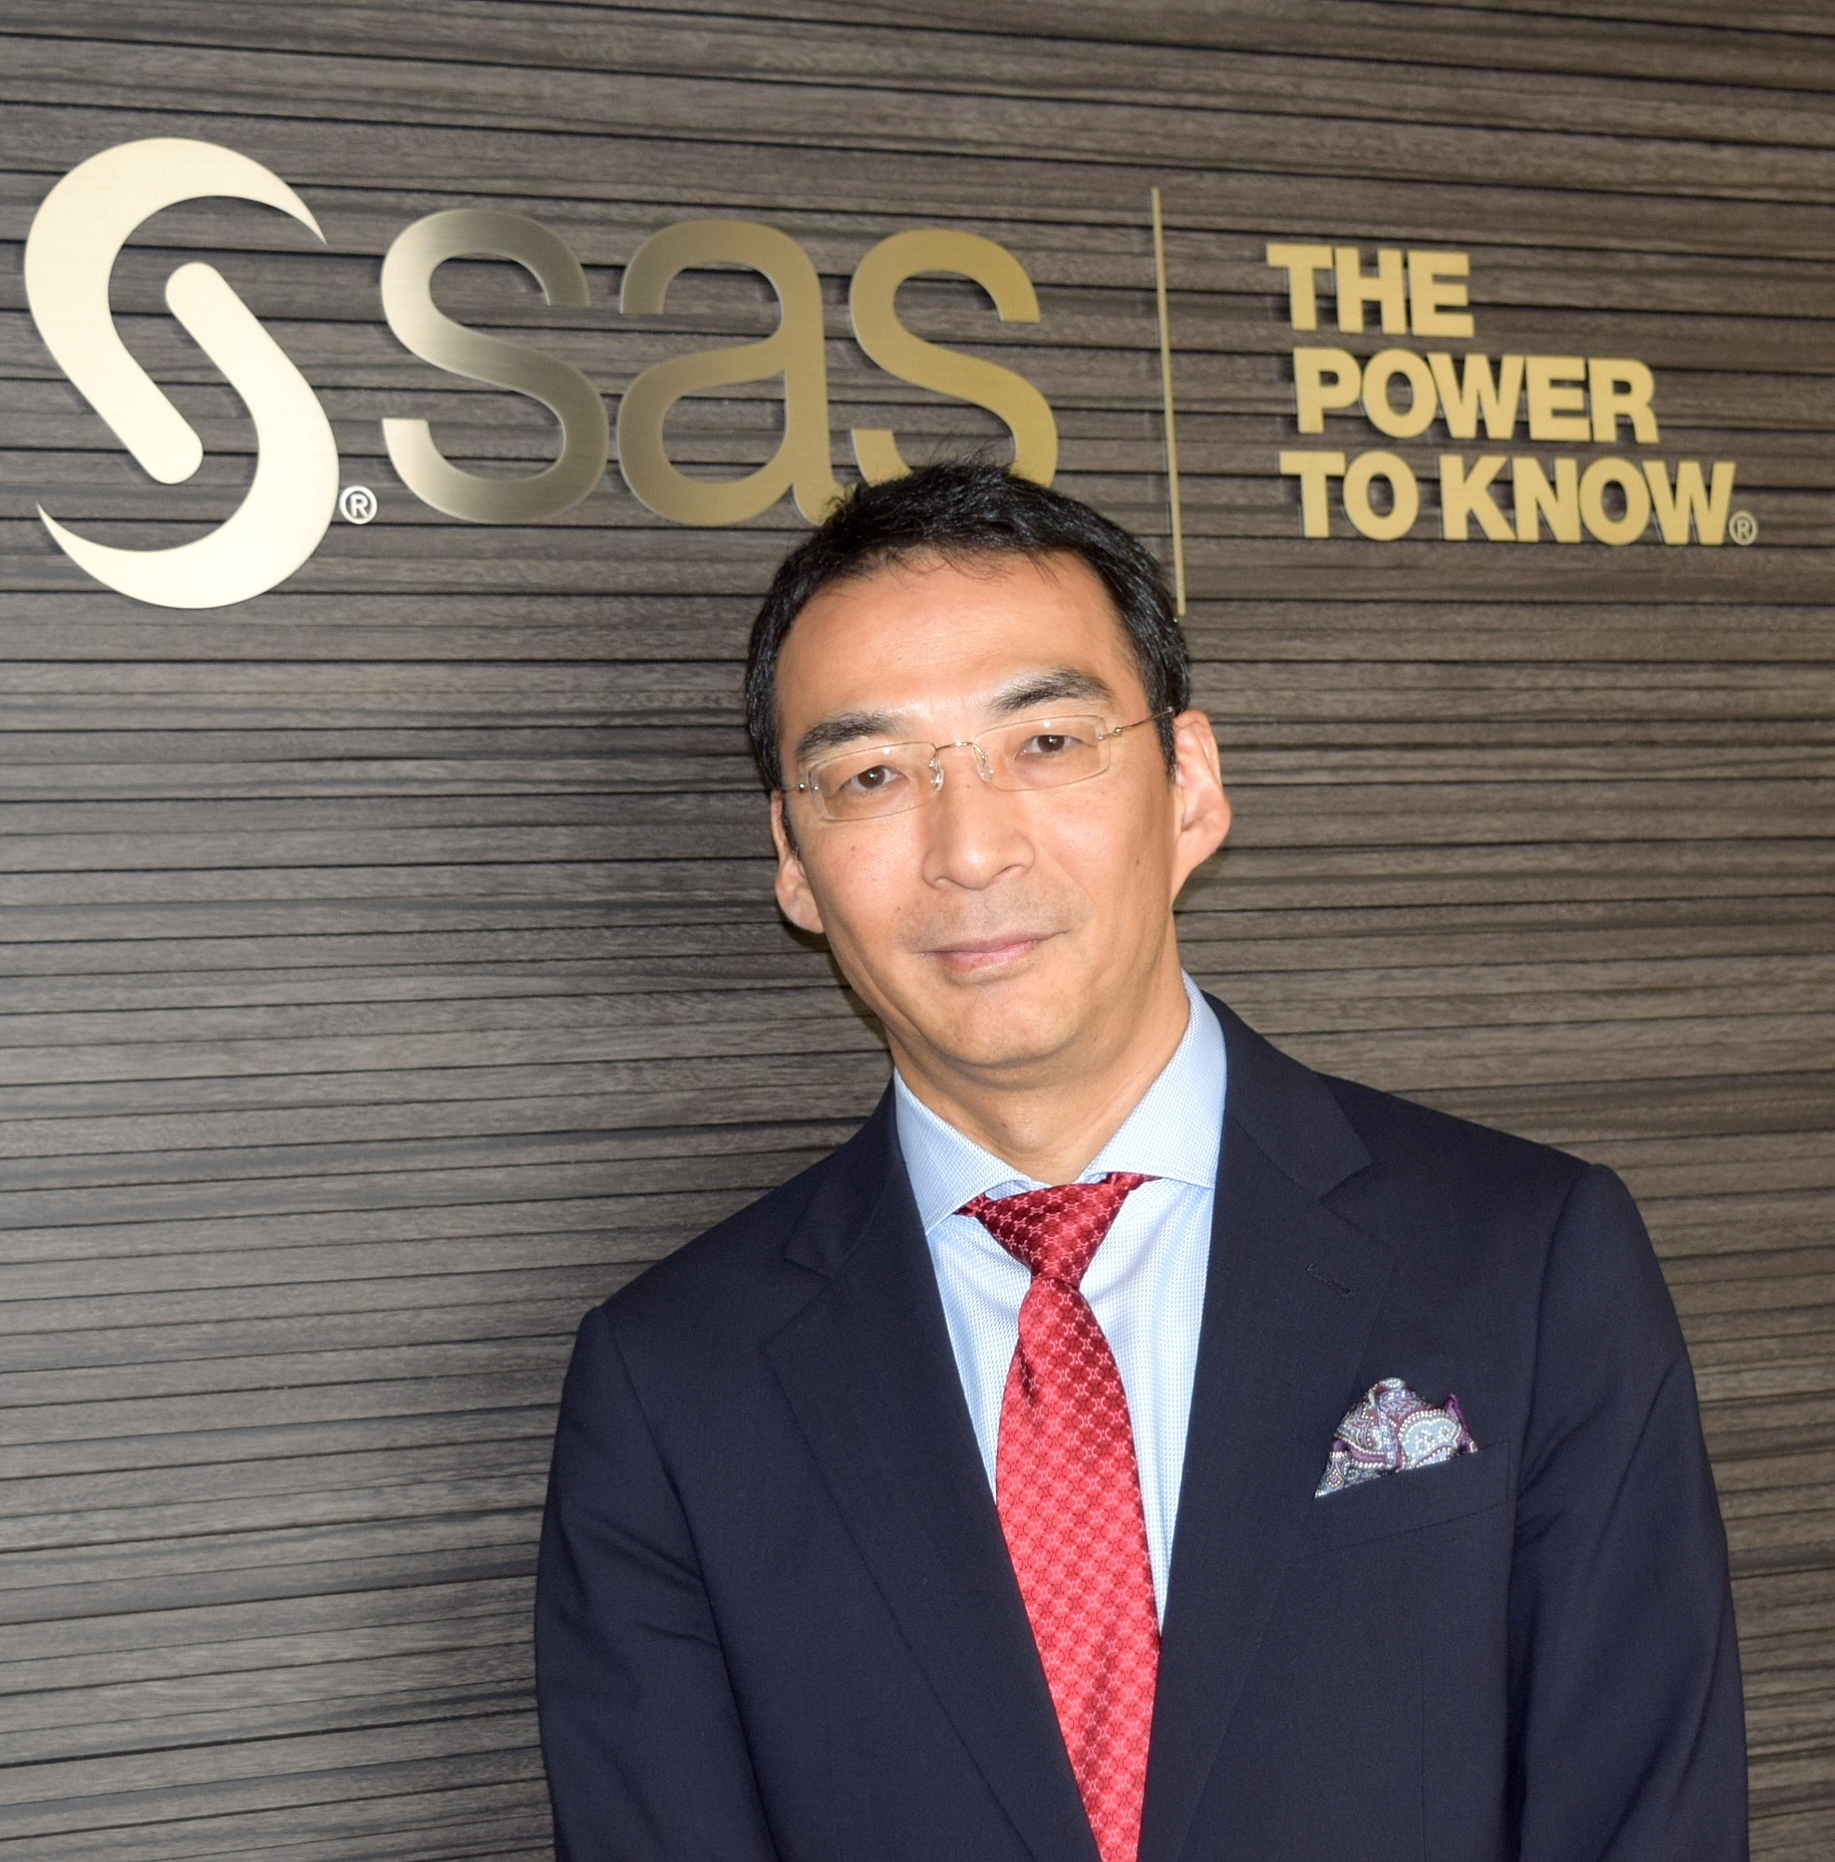 SAS Institute Japanの堀田徹哉社長。アクセンチュアやSAPを経て、2015年10月から現職。ワールドワイドで39年連続売り上げ成長を果たしており、好調な業績を背景に今年は六本木ヒルズの本社を増床する予定だ。